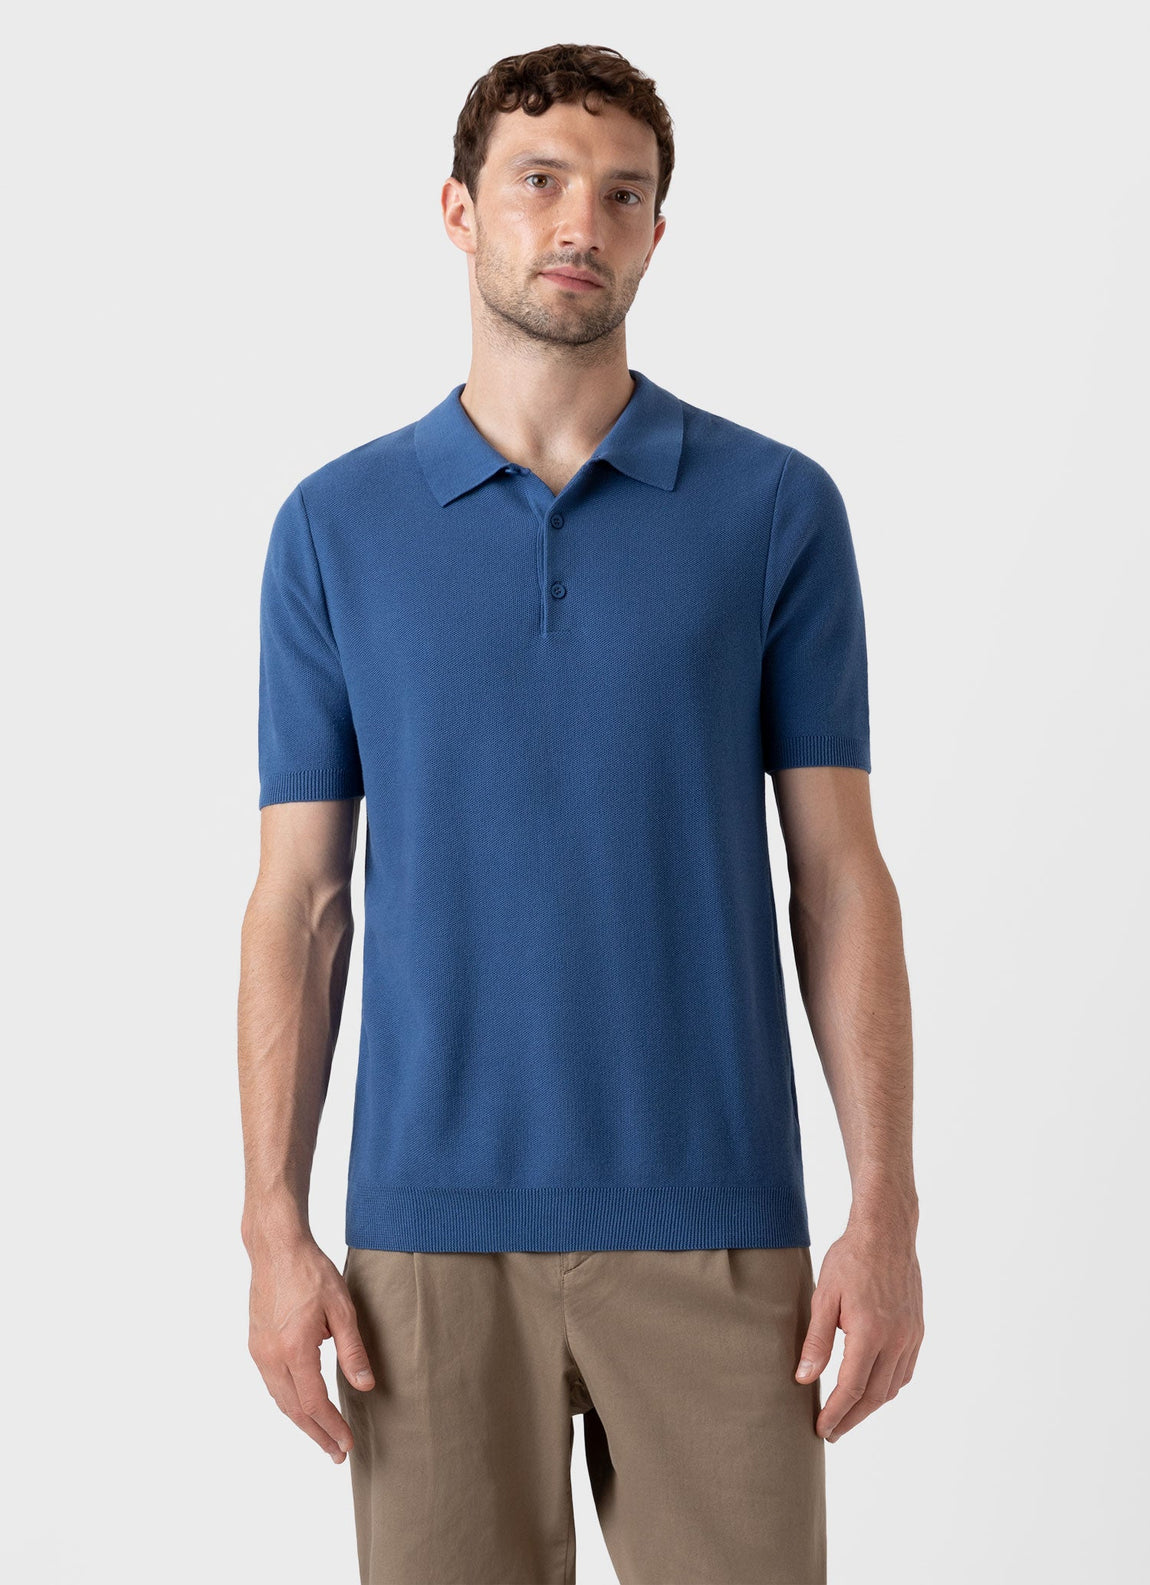 Men's Knit Polo Shirt in Bluestone